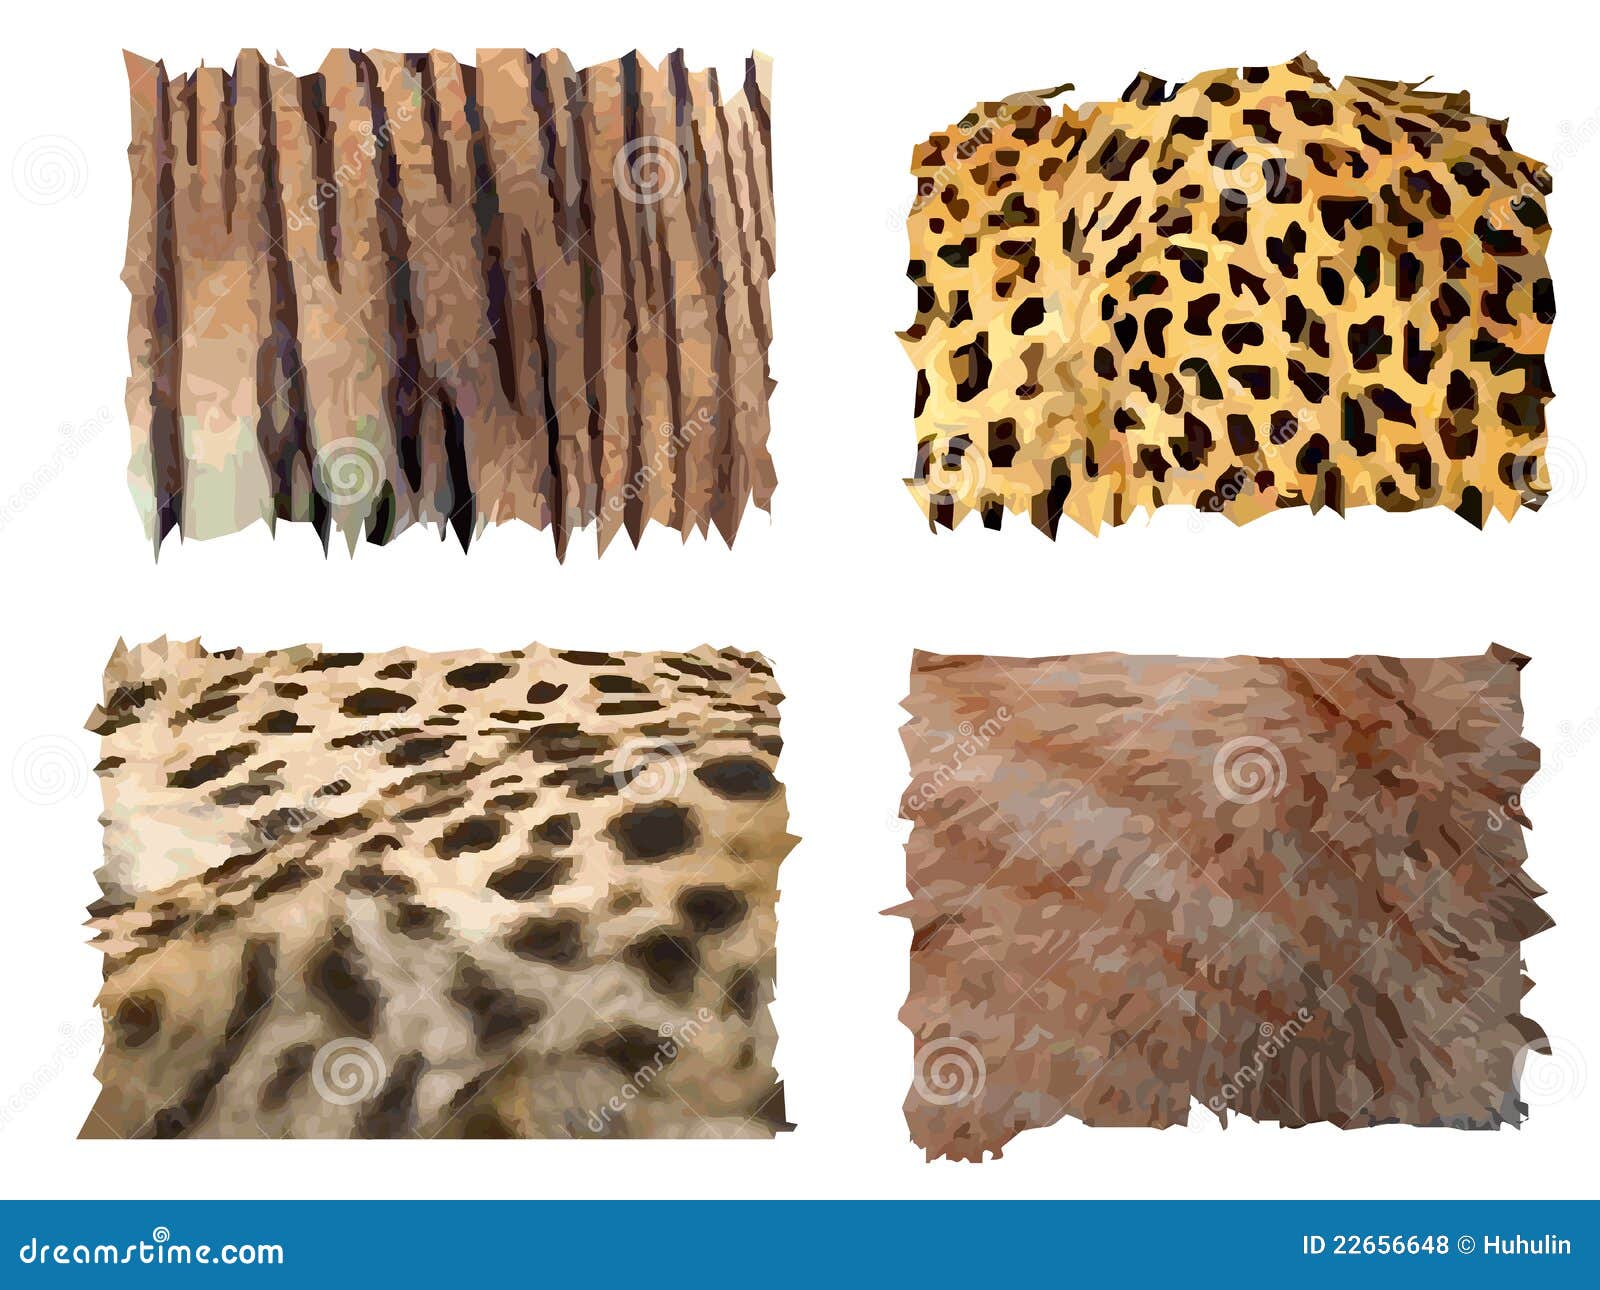 feline animals fur patterns